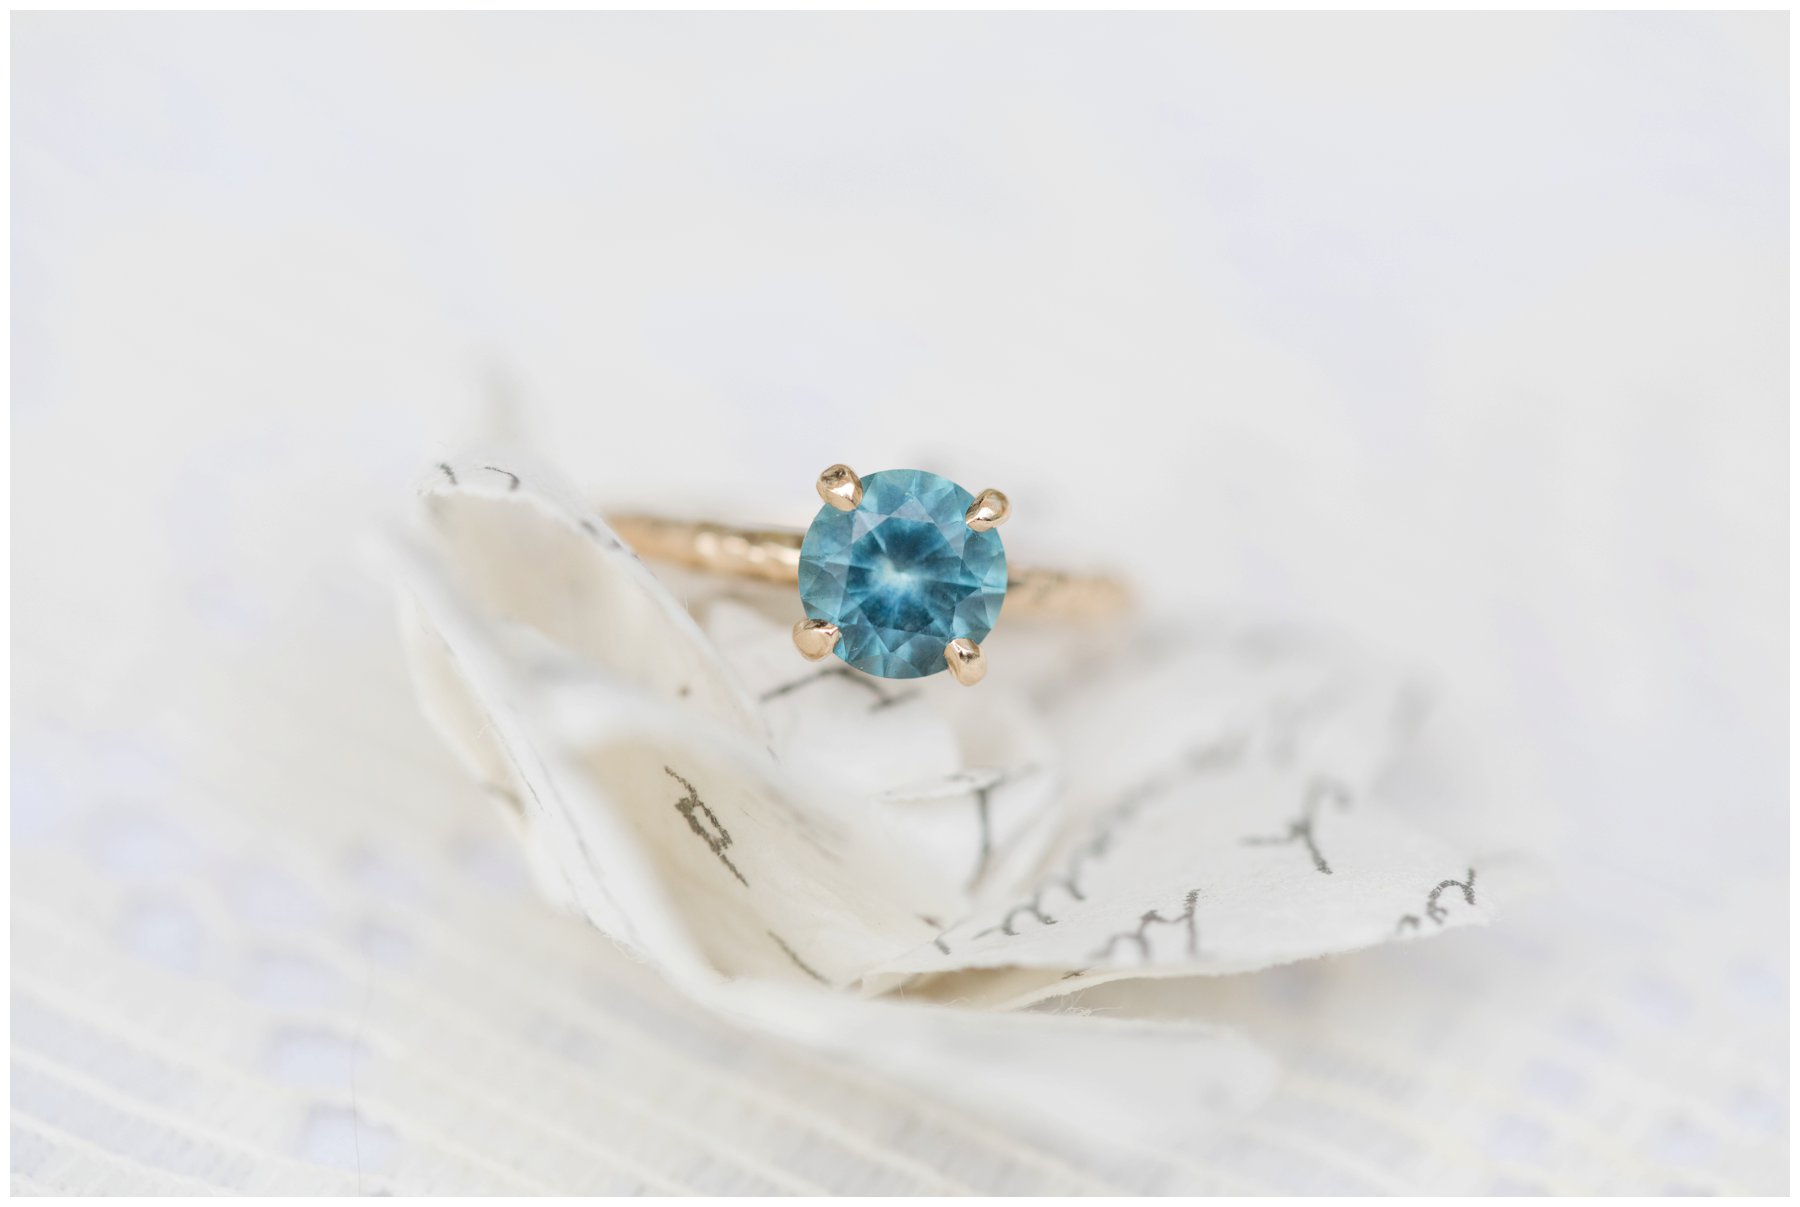 Turquoise engagement ring - The Barnett Company, Ottawa Wedding Photographers